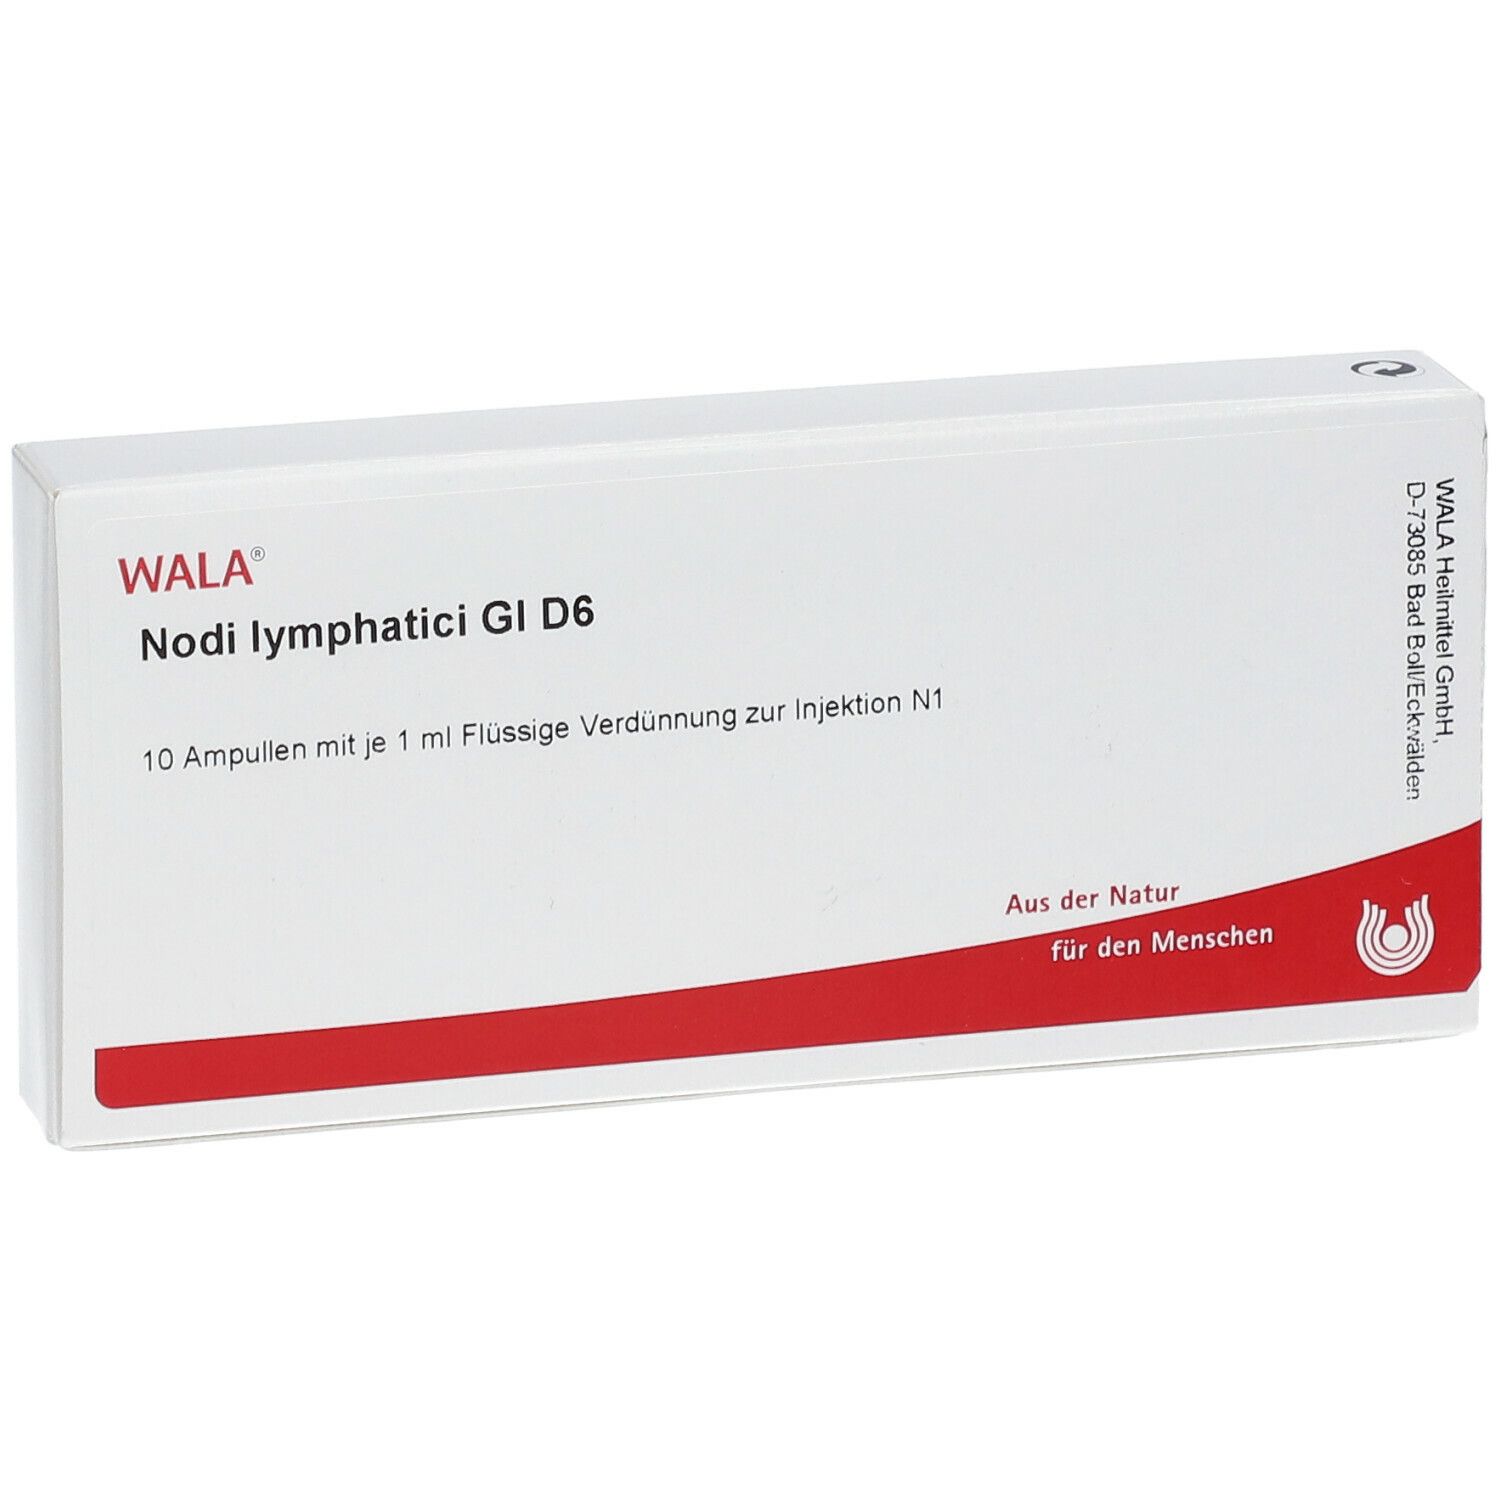 WALA® Nodi lymphatici Gl D 6